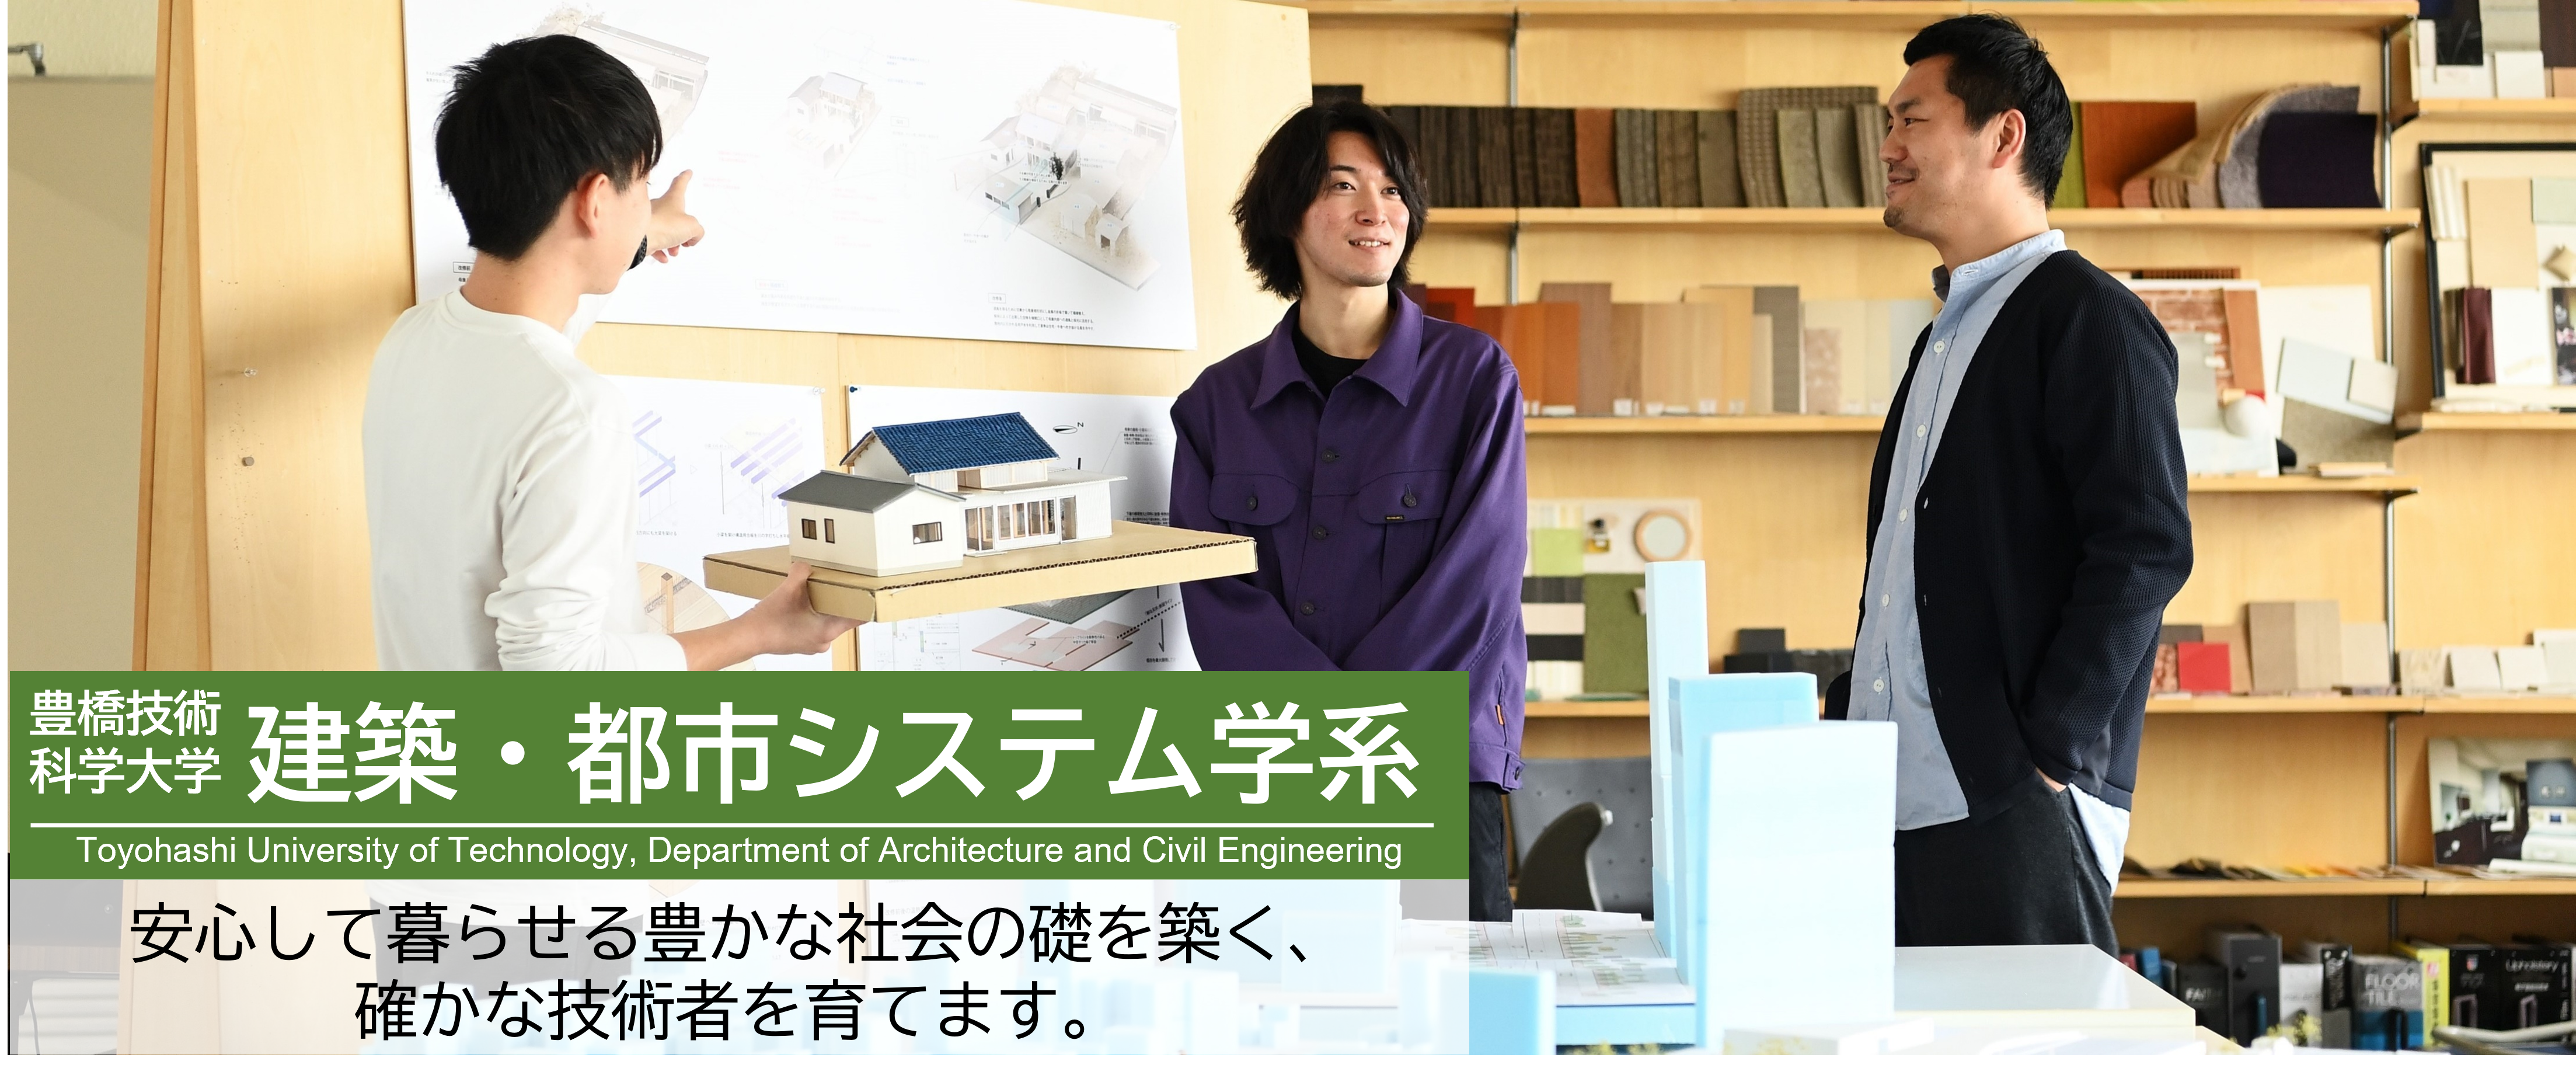 豊橋技術科学大学 建築・都市システム学系 Toyohashi University of Technology, Department of Architecture and Civil Engineering 安心して暮らせる豊かな社会の礎を築く、確かな技術者を育てます。